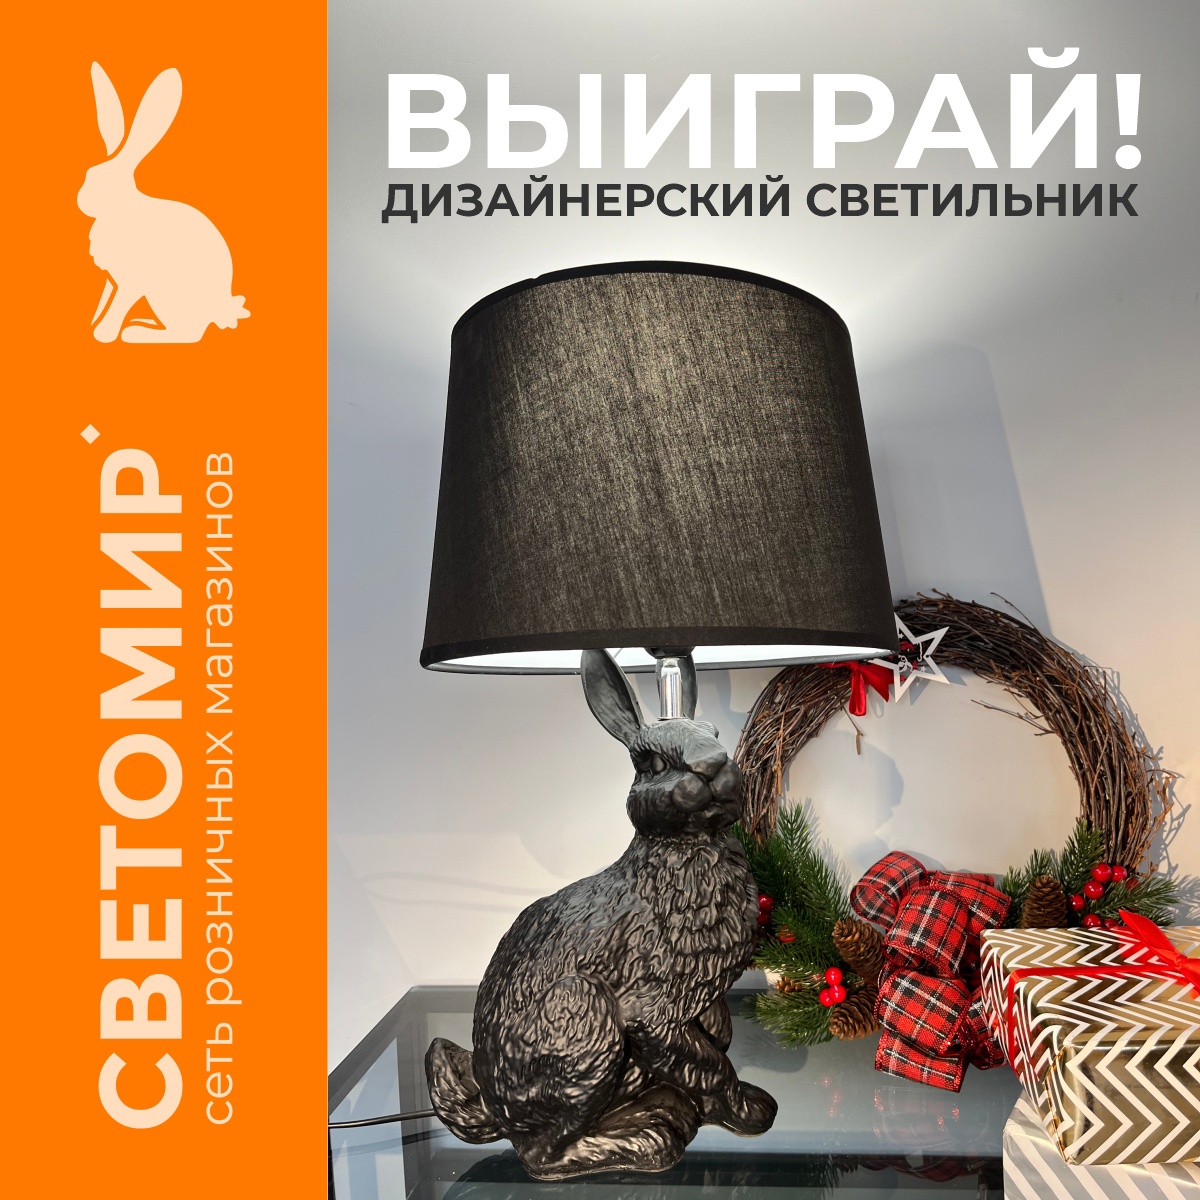 Настольная лампа-кролик за репост в ВК